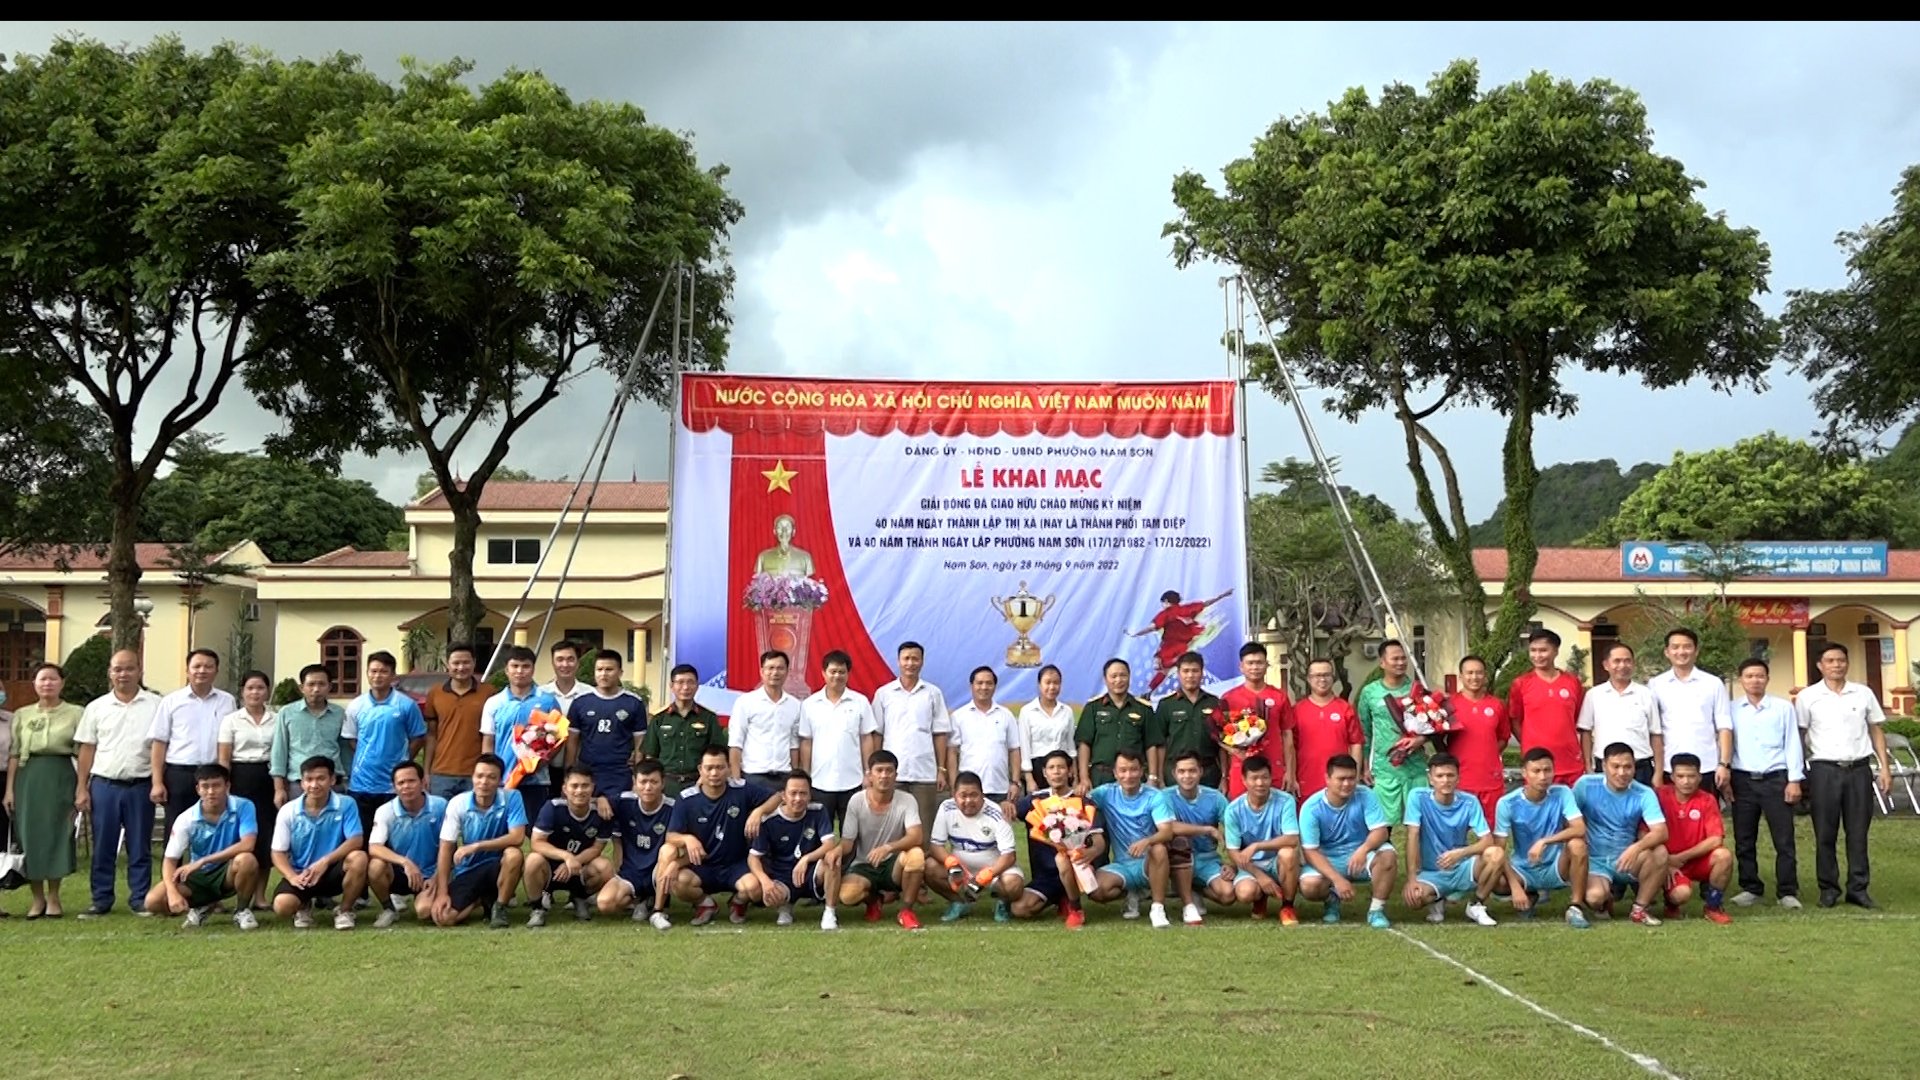 Phường Nam Sơn tổ chức Lễ Khai mạc giải bóng đá giao lưu chào mừng kỷ niệm 40 năm thành lập thị xã nay là thành phố Tam Điệp